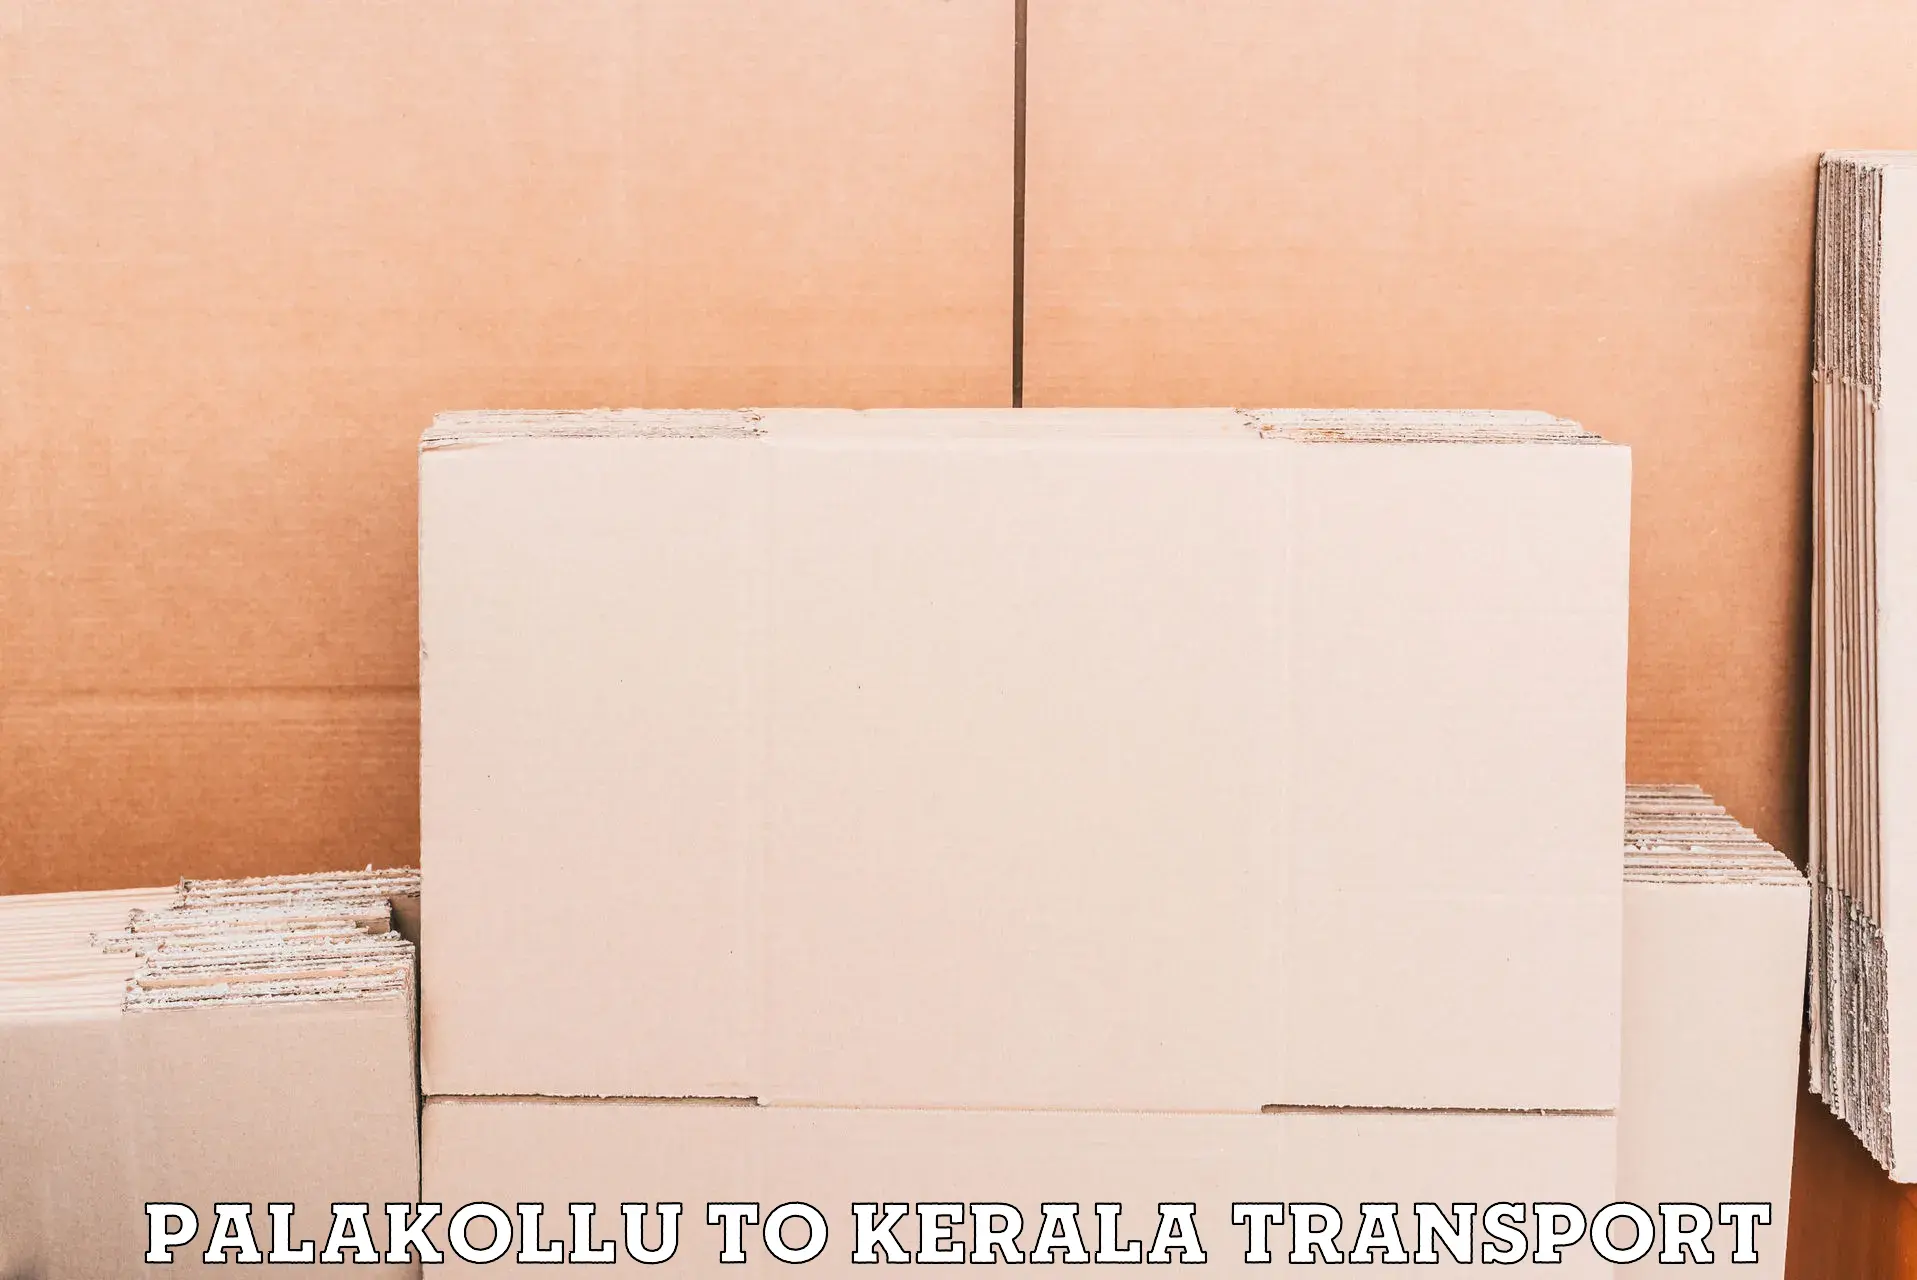 Daily transport service Palakollu to Kerala